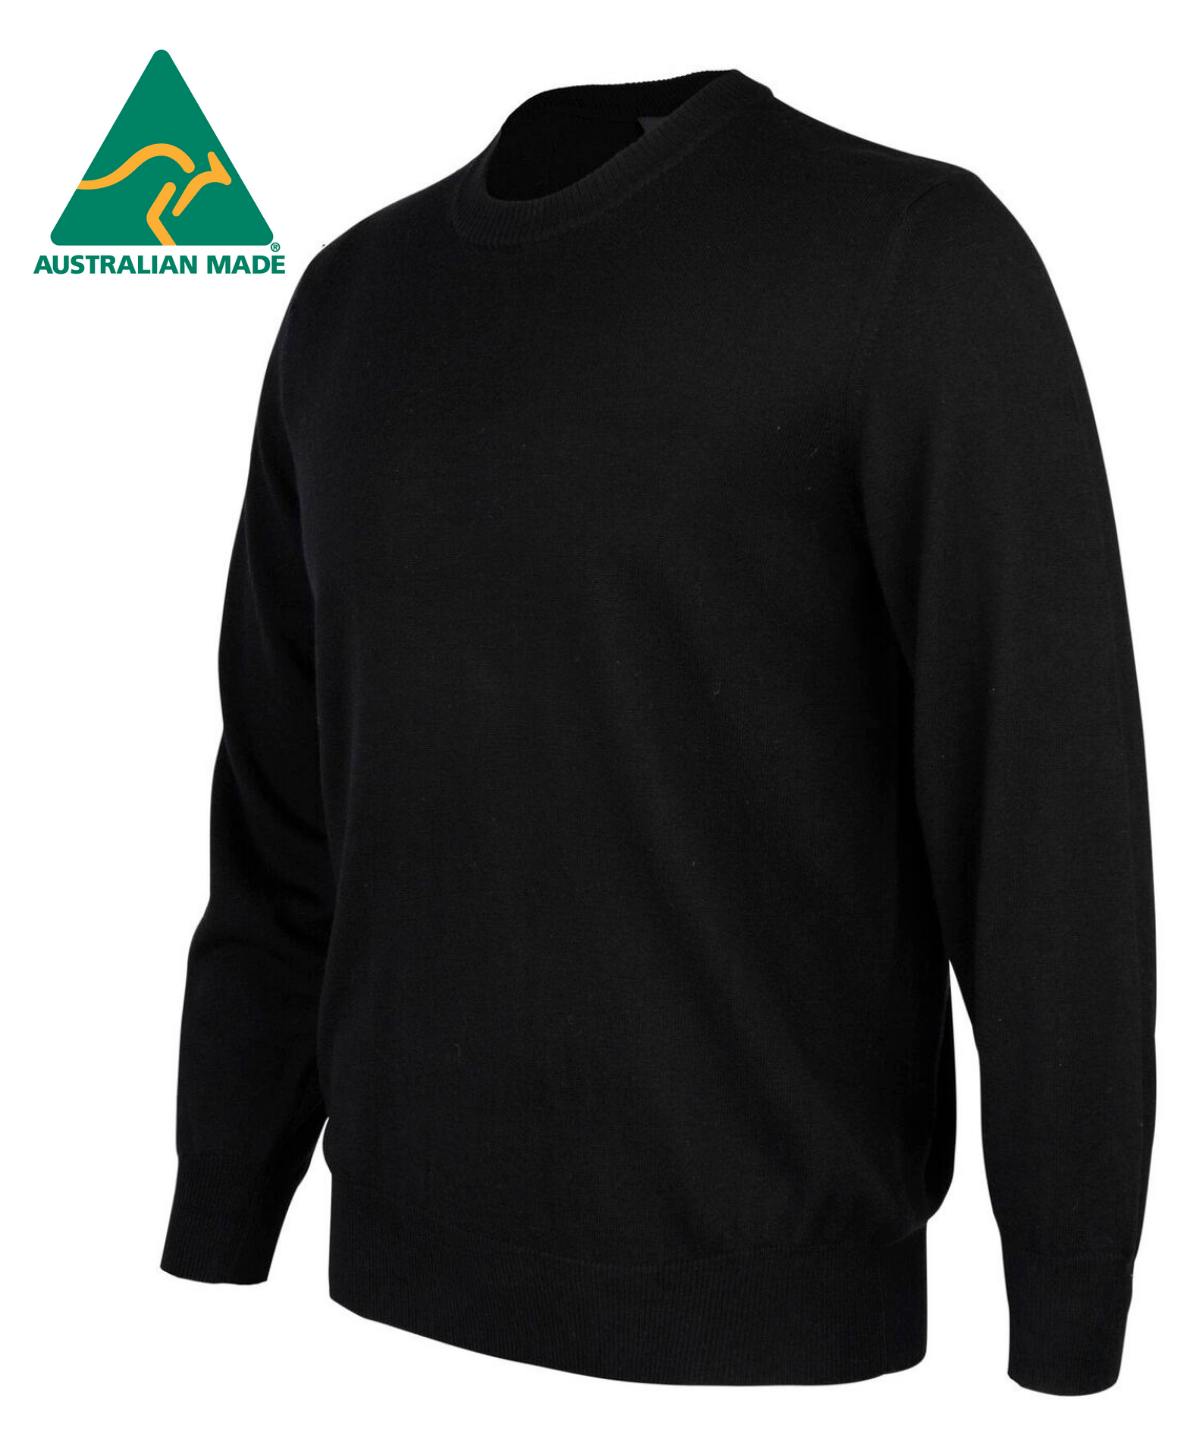 Berrima Alpaca Crew Neck Sweater - Black - 1